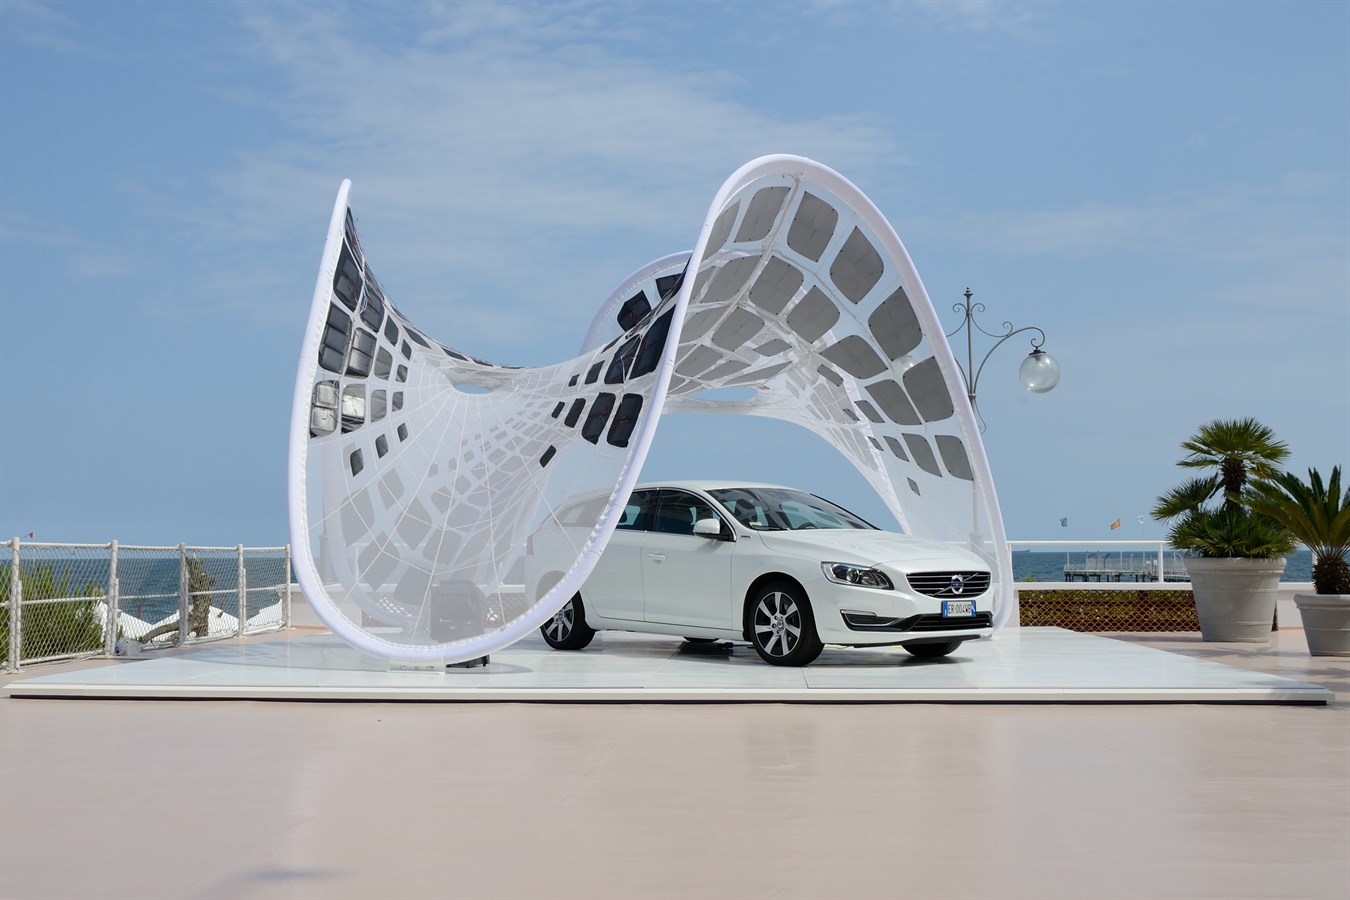 Volvo Vision 2020 protagonista al forum degli architetti di Venezia con un premio per le idee che renderanno sostenibili le città del futuro 